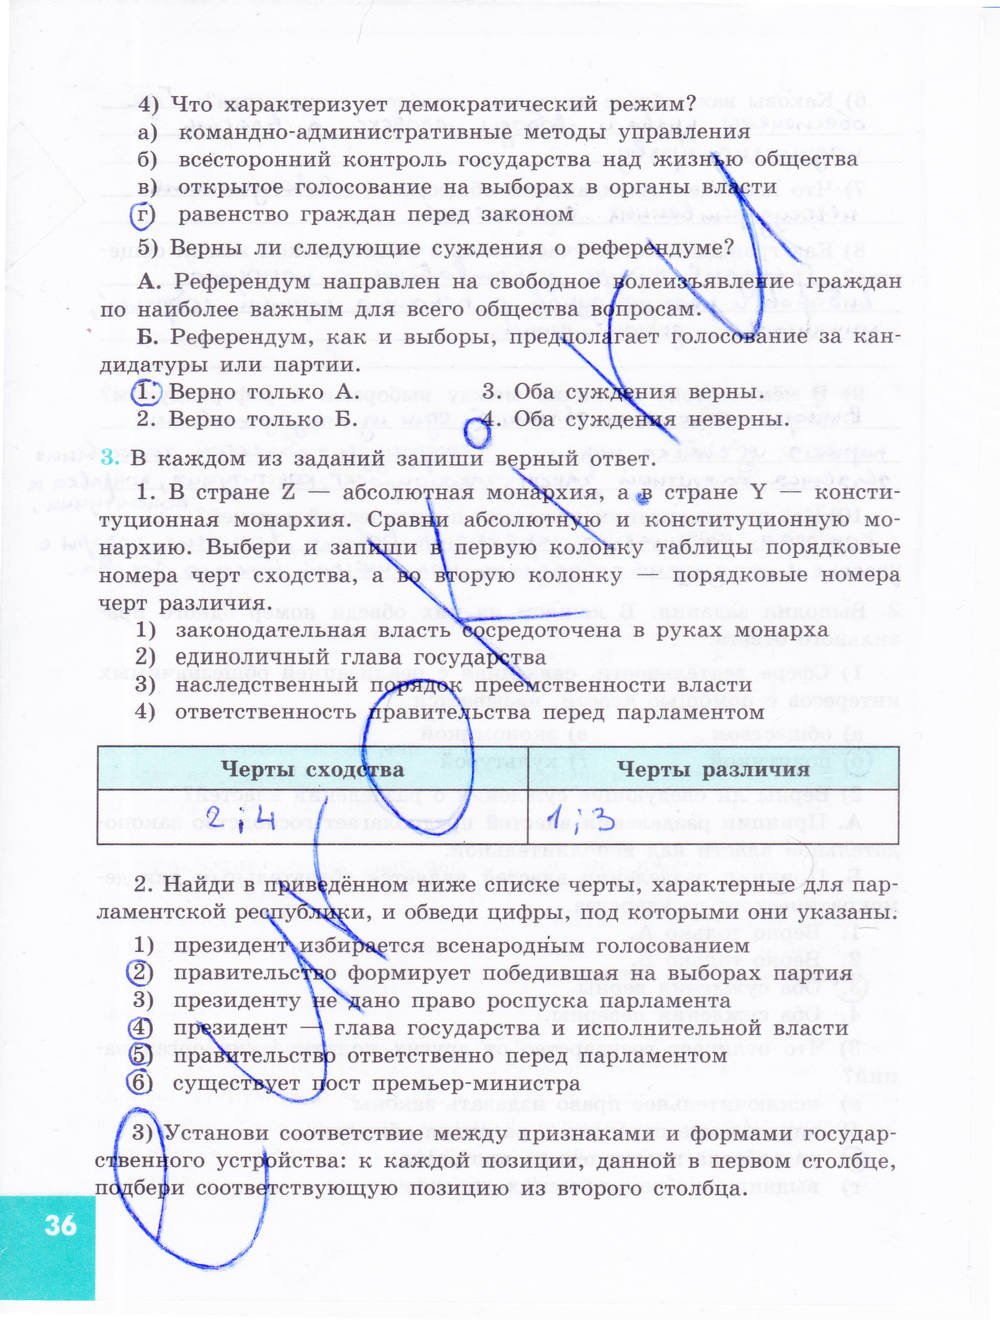 Зеленая тетрадь, 9 класс, Котова О.А. Лискова Т.Е., 2015, задание: стр. 36